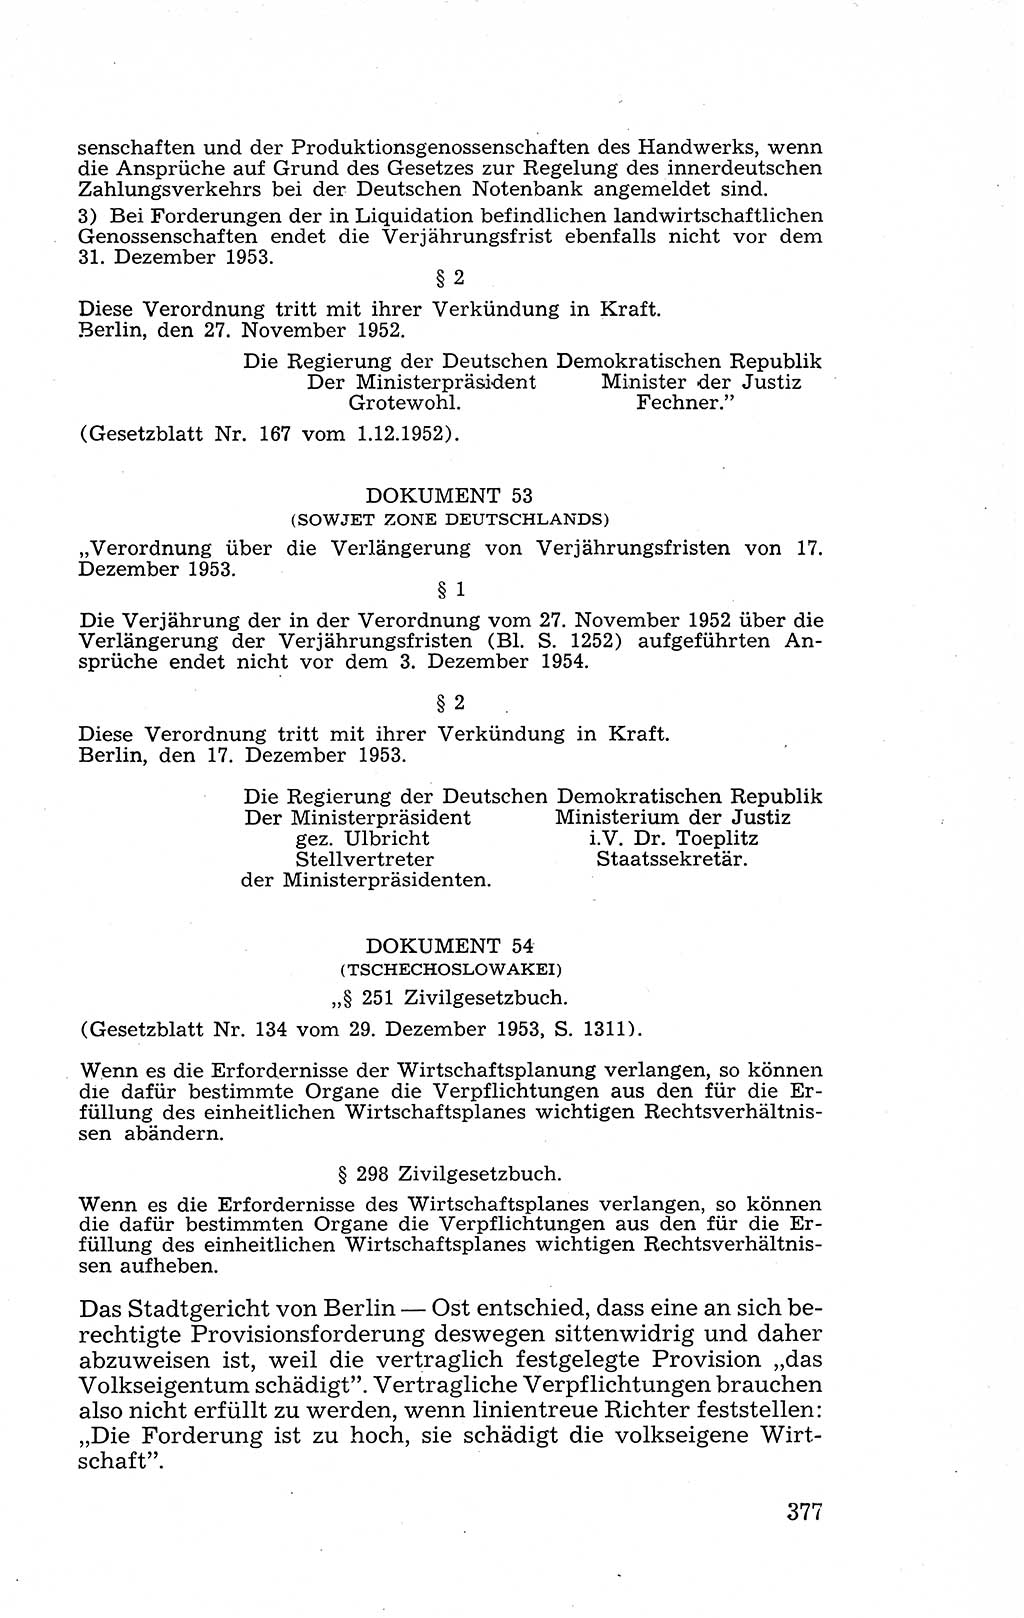 Recht in Fesseln, Dokumente, Internationale Juristen-Kommission [Bundesrepublik Deutschland (BRD)] 1955, Seite 377 (R. Dok. IJK BRD 1955, S. 377)